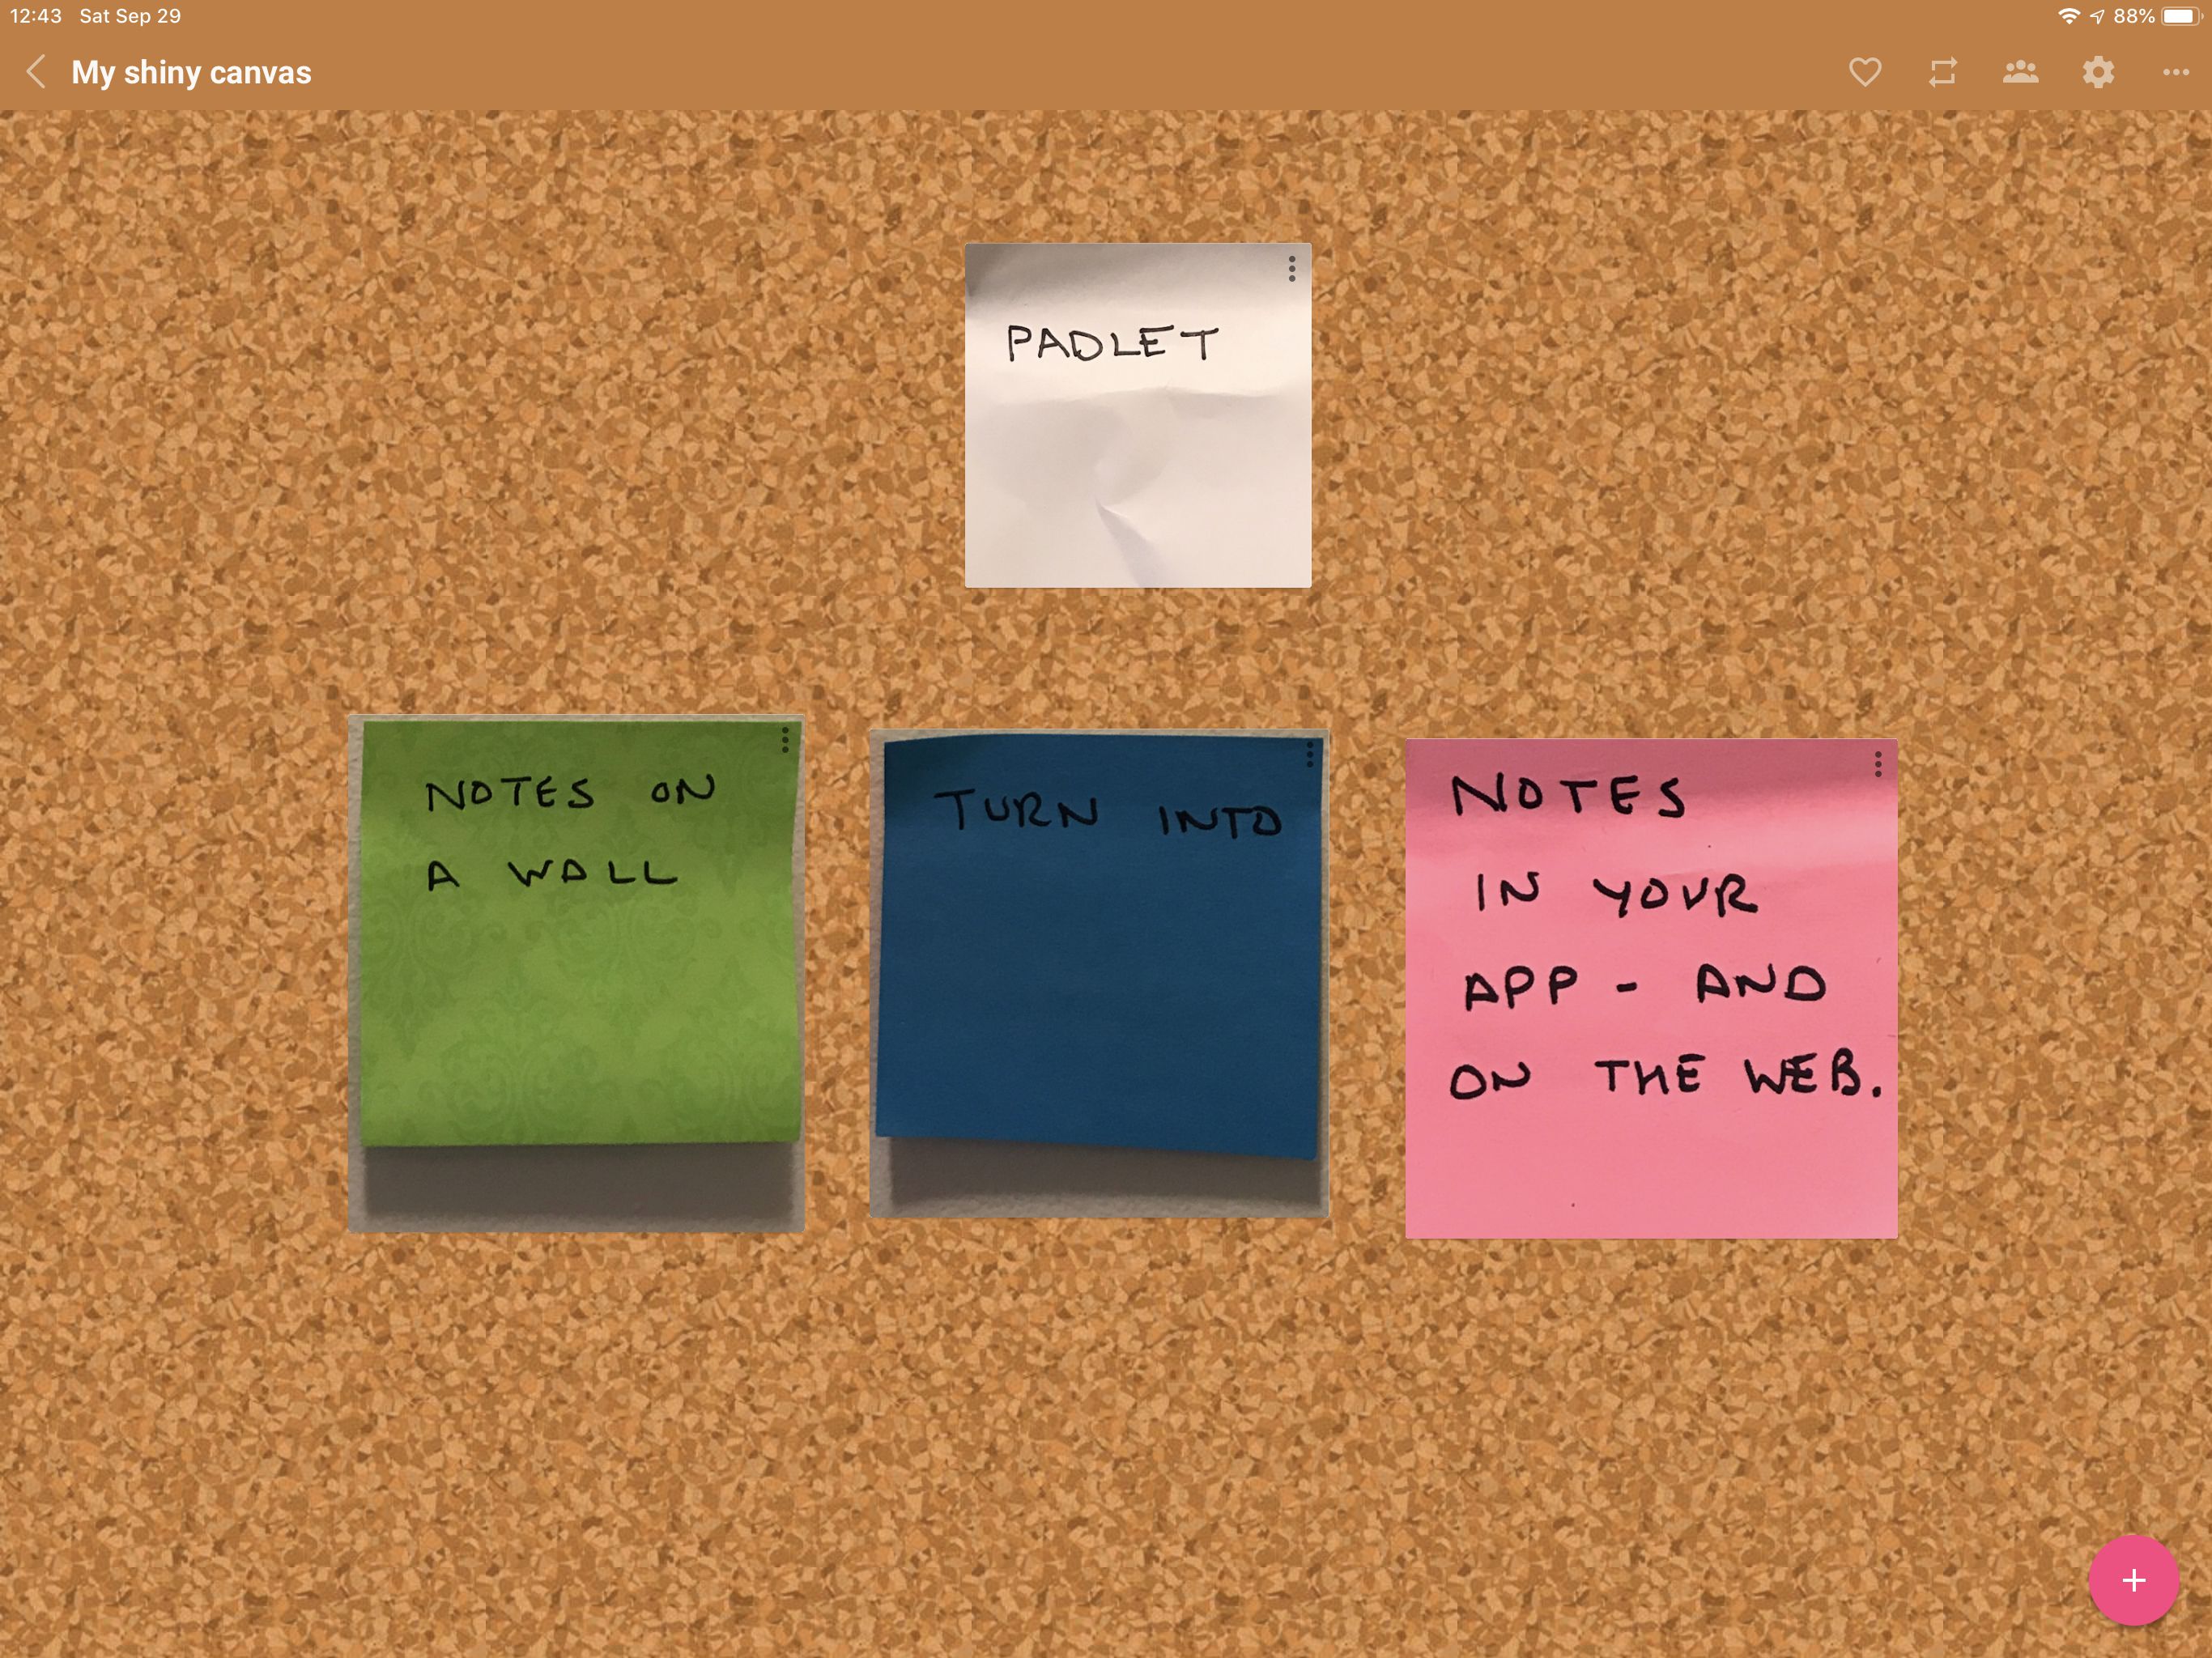 Captura de tela do Padlet, mostrando 4 notas auto-adesivas convertidas em notas digitais redimensionáveis